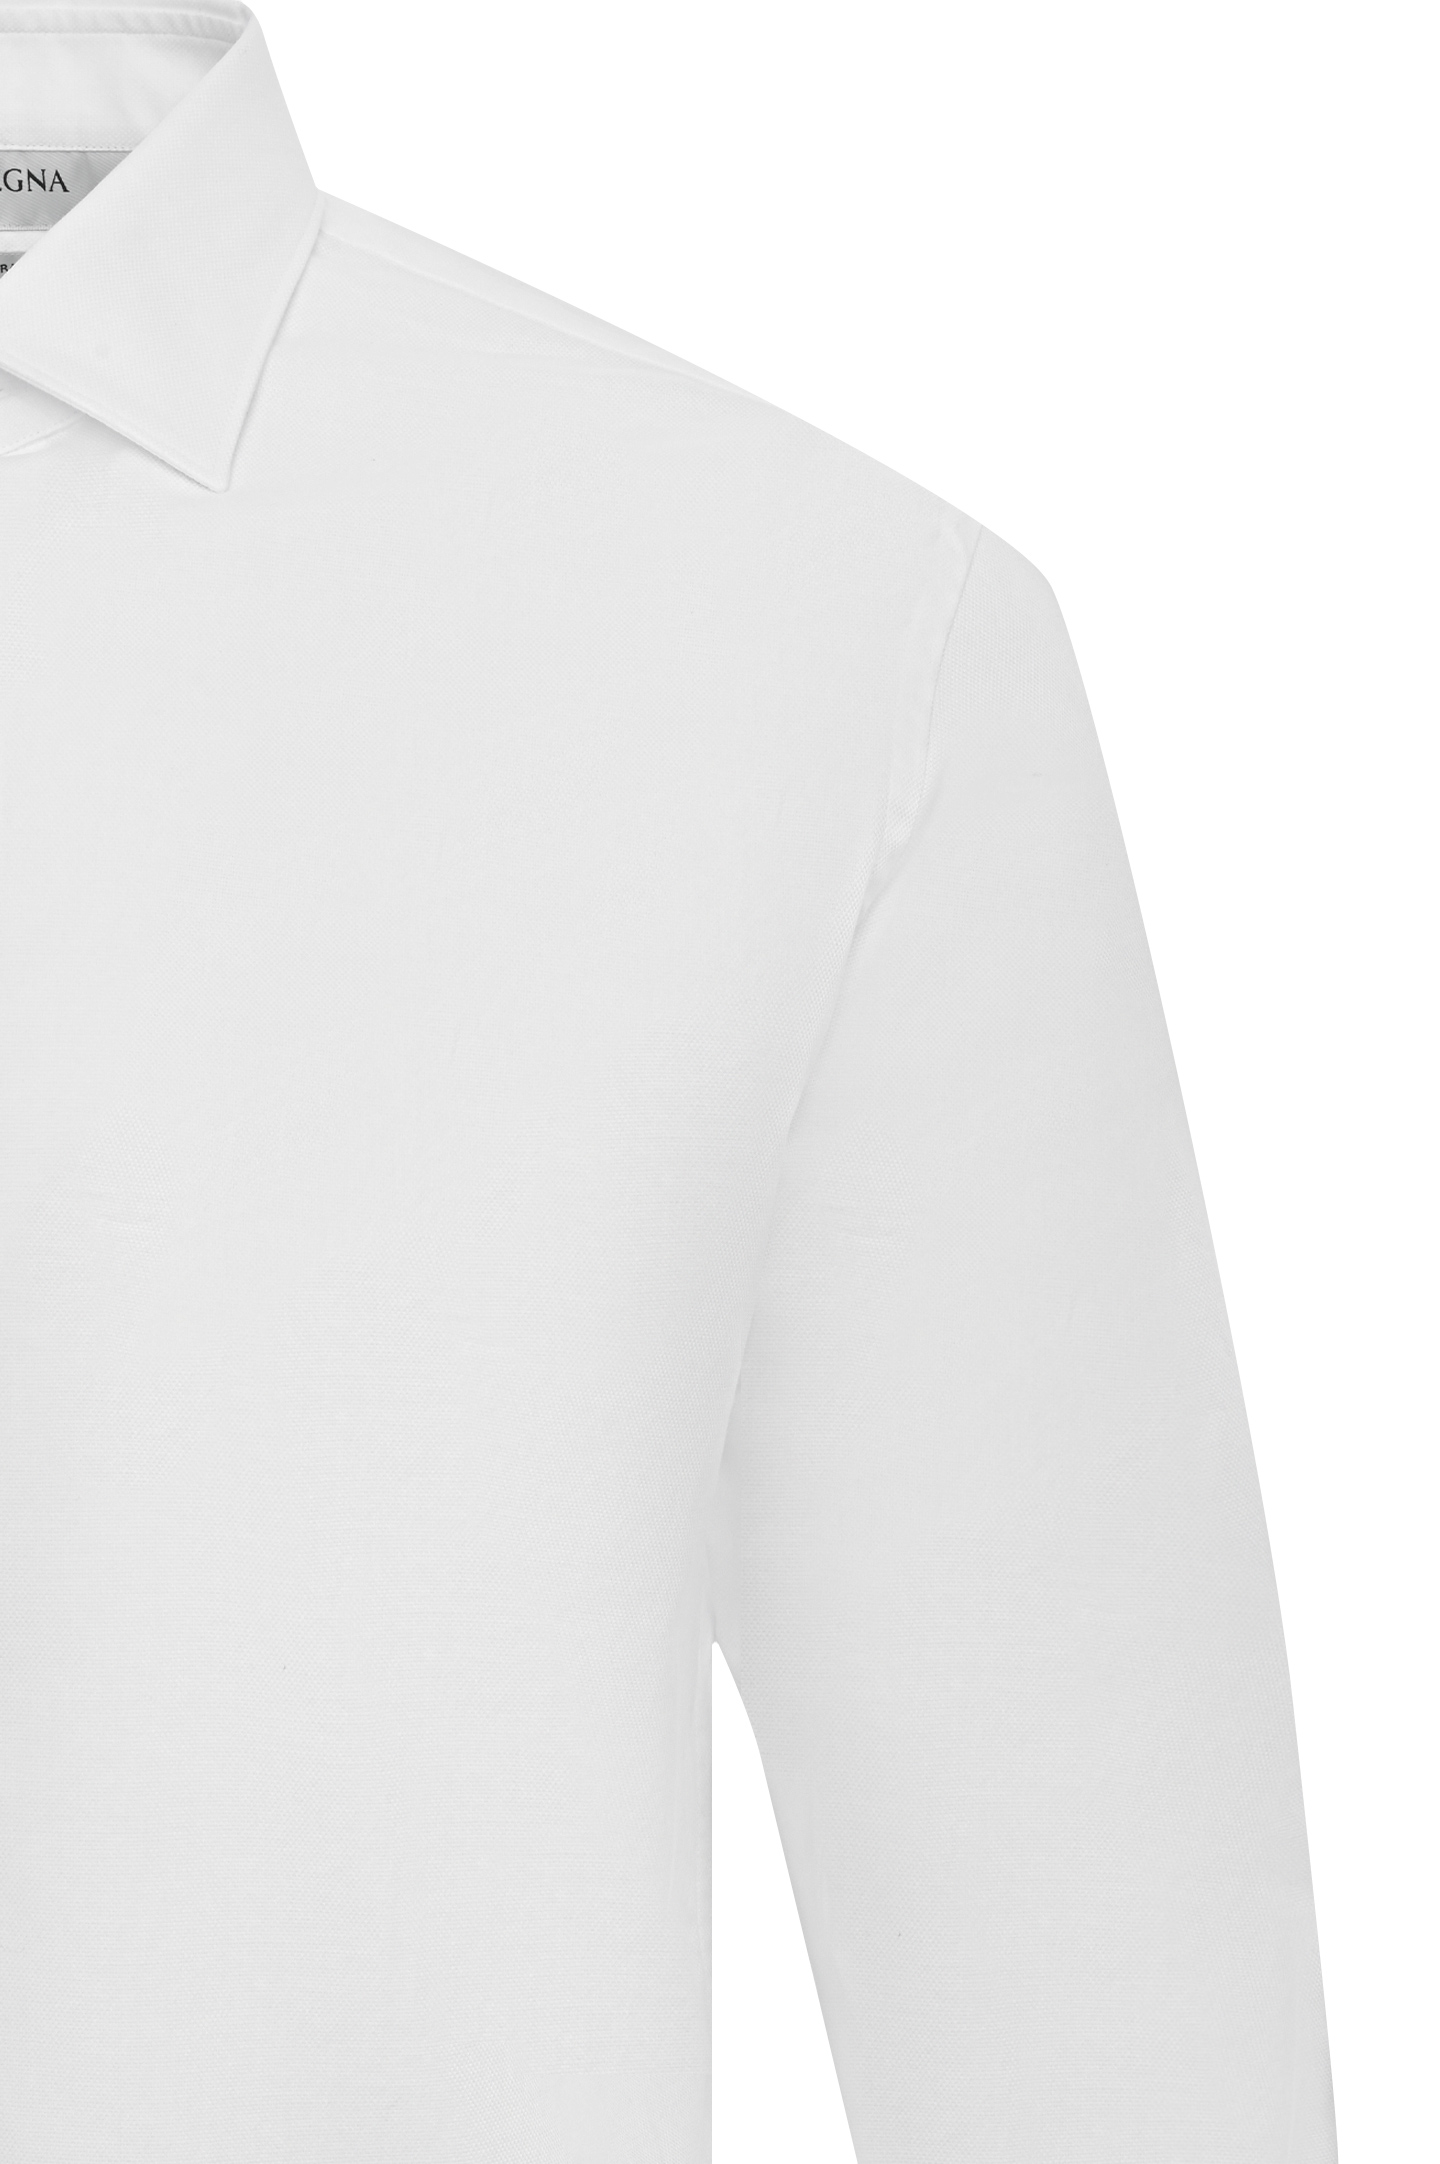 Рубашка Z ZEGNA 305120 ZCRC1, цвет: Белый, Мужской